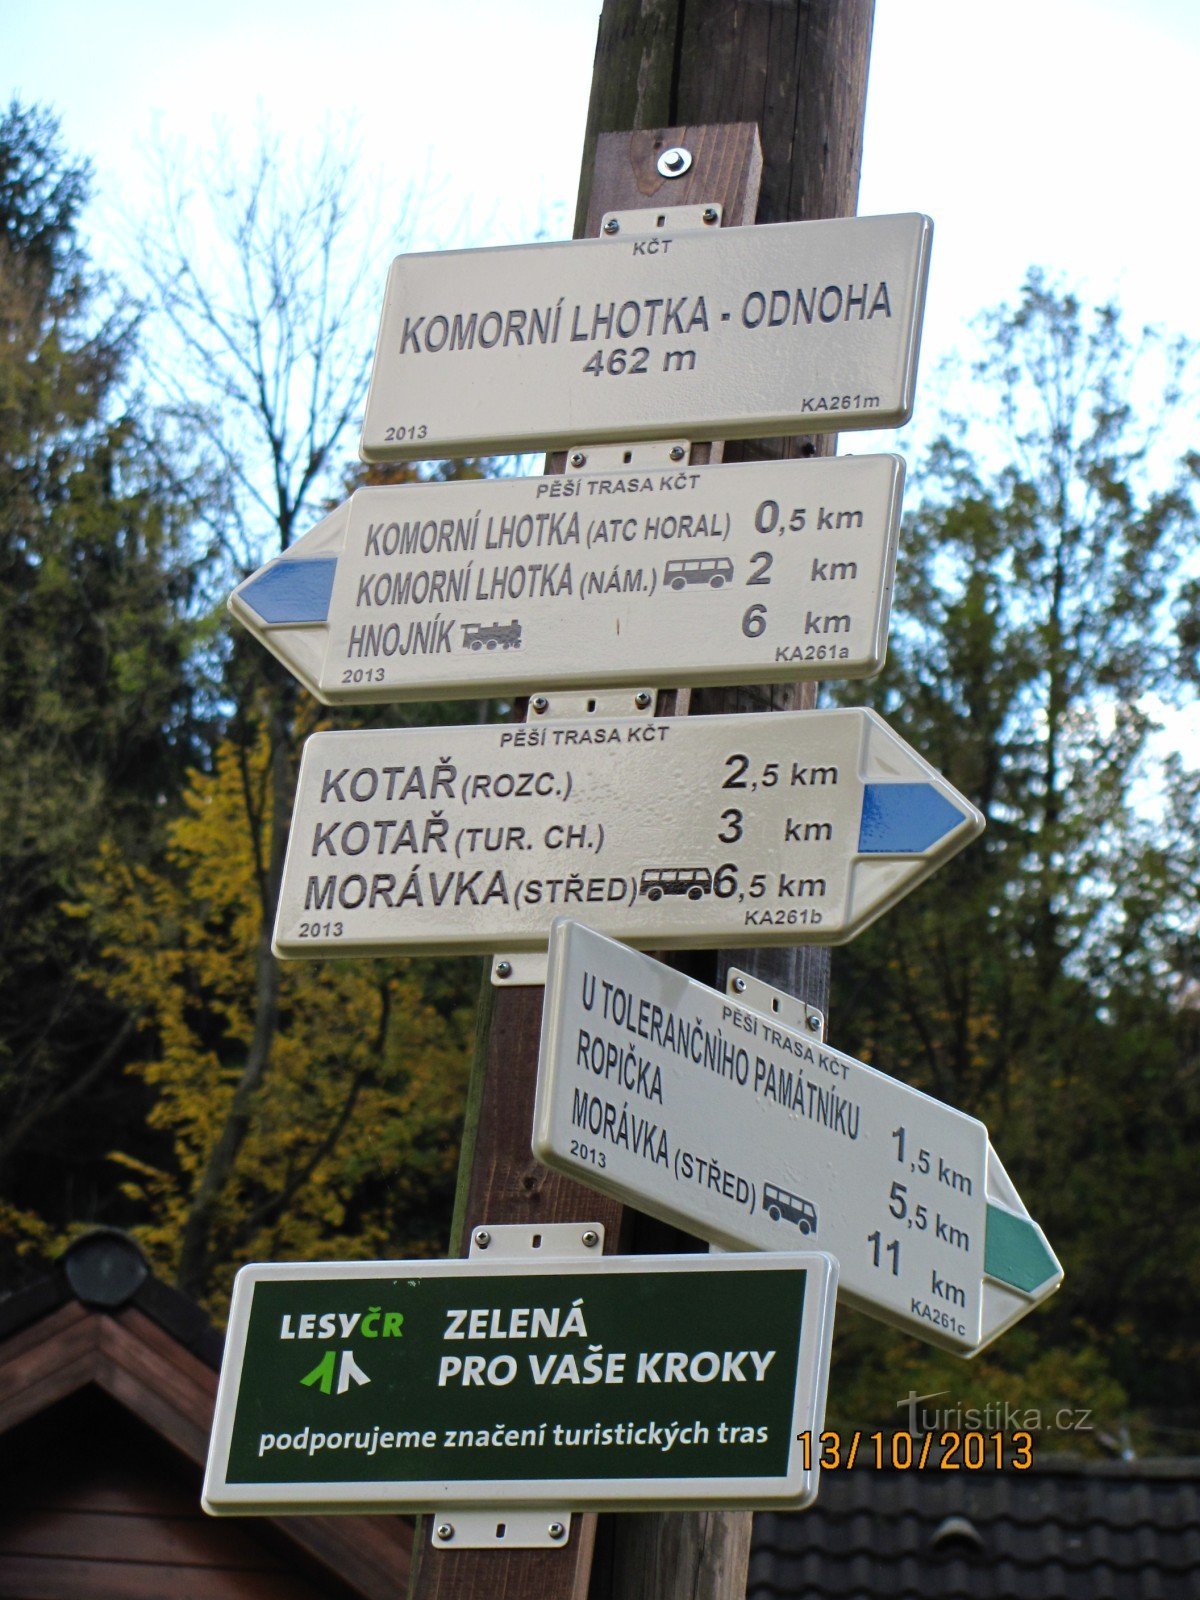 Från Komorní Lhotka till Kotař och vidare till Ropička